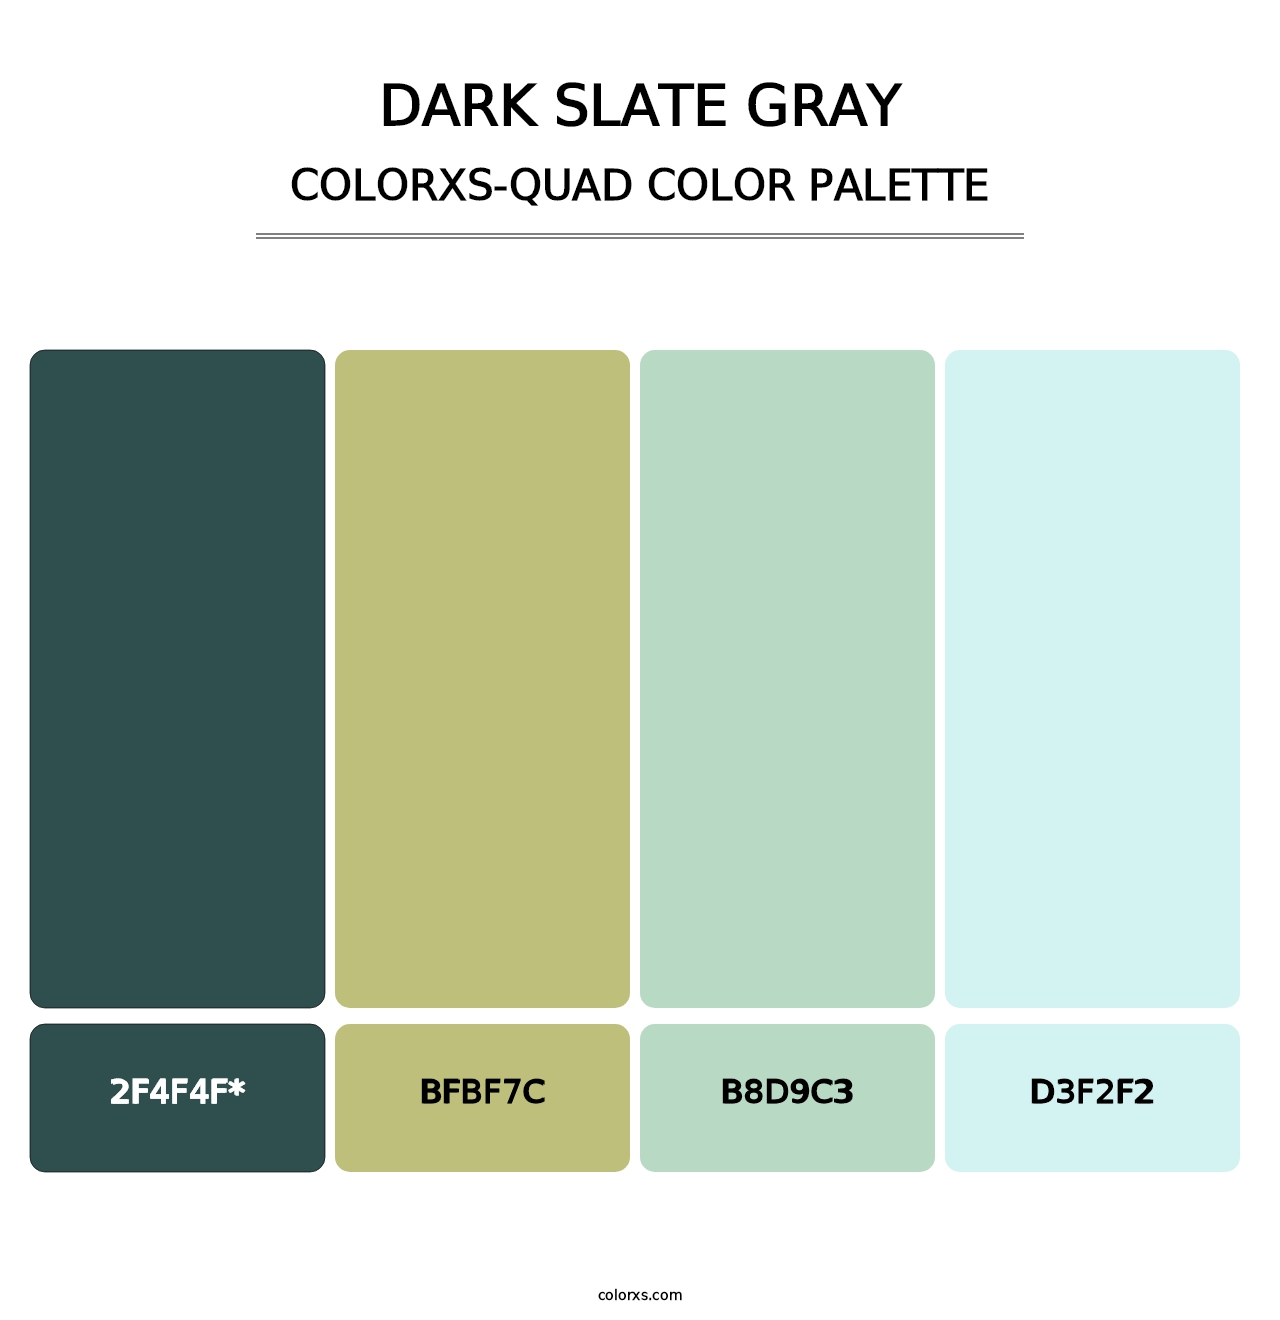 Dark Slate Gray - Colorxs Quad Palette